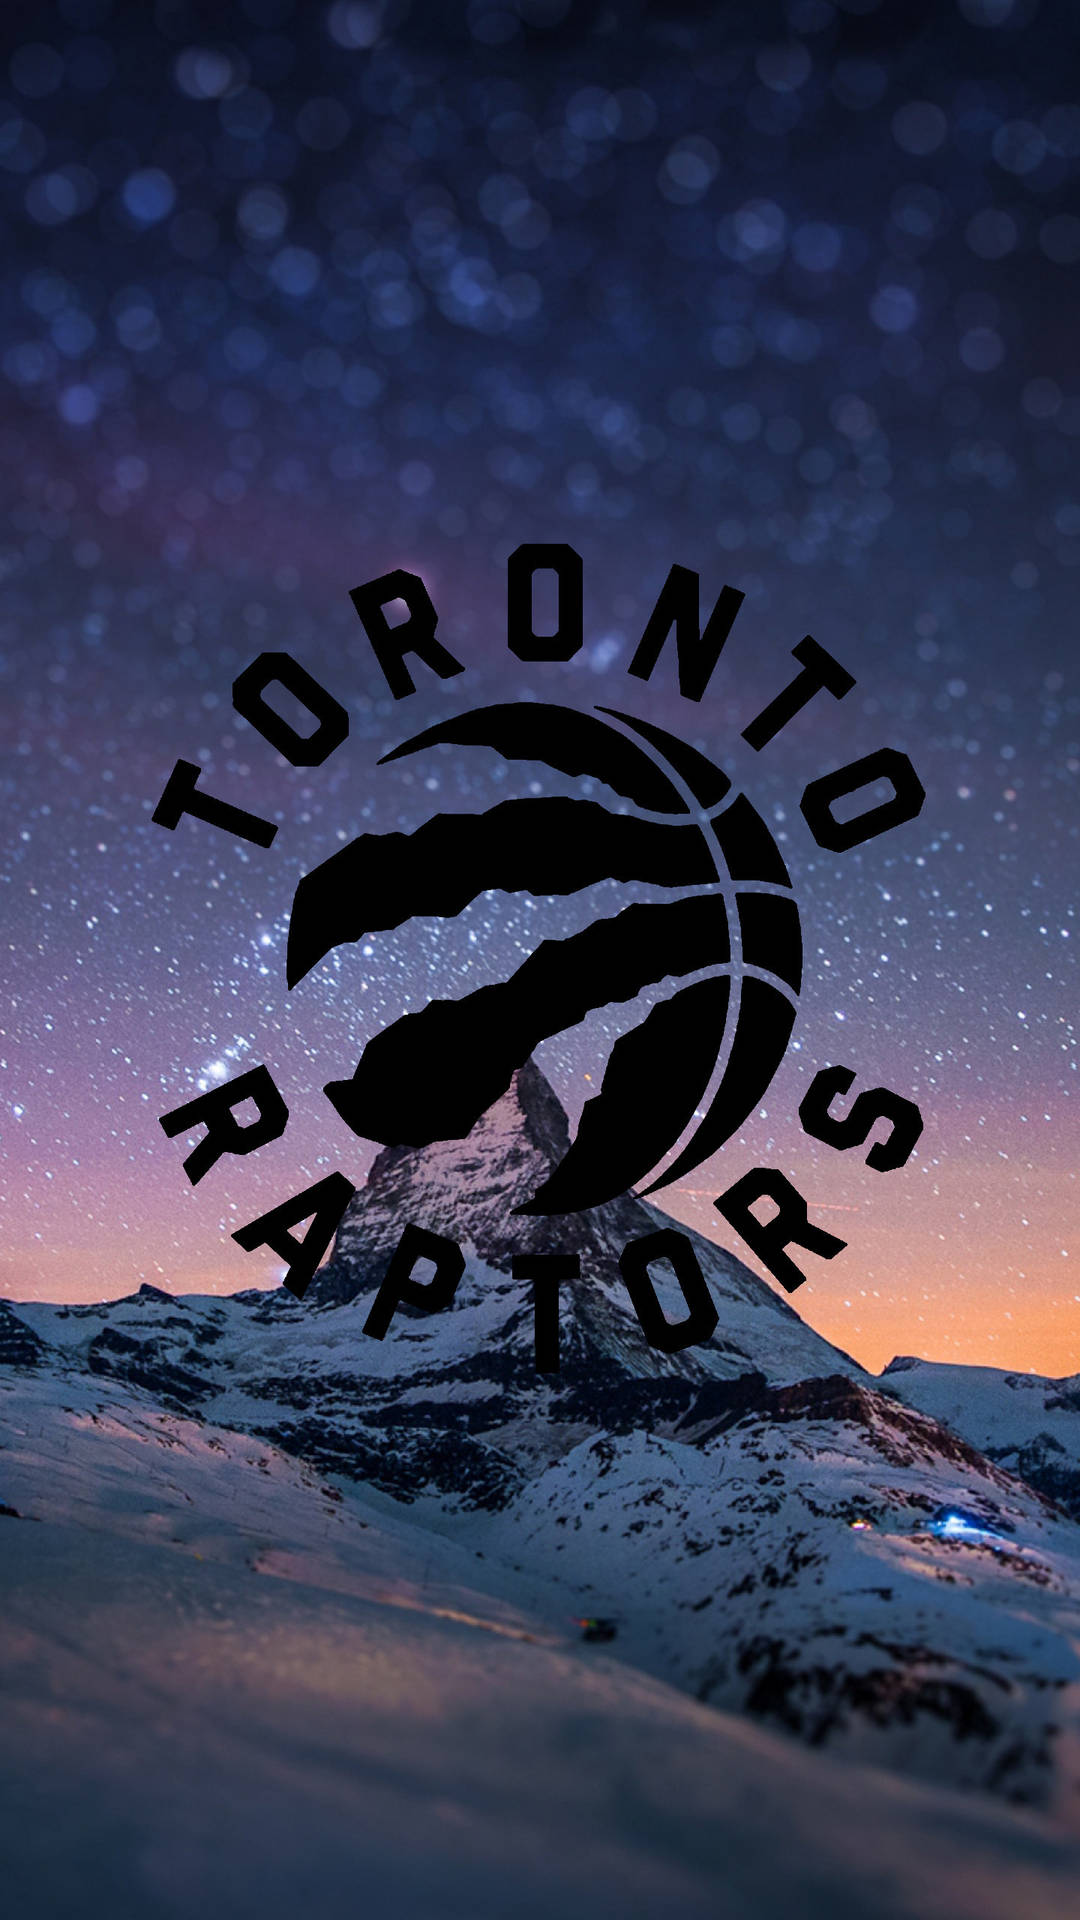 Torontoraptors-logotyp I Snö. Wallpaper